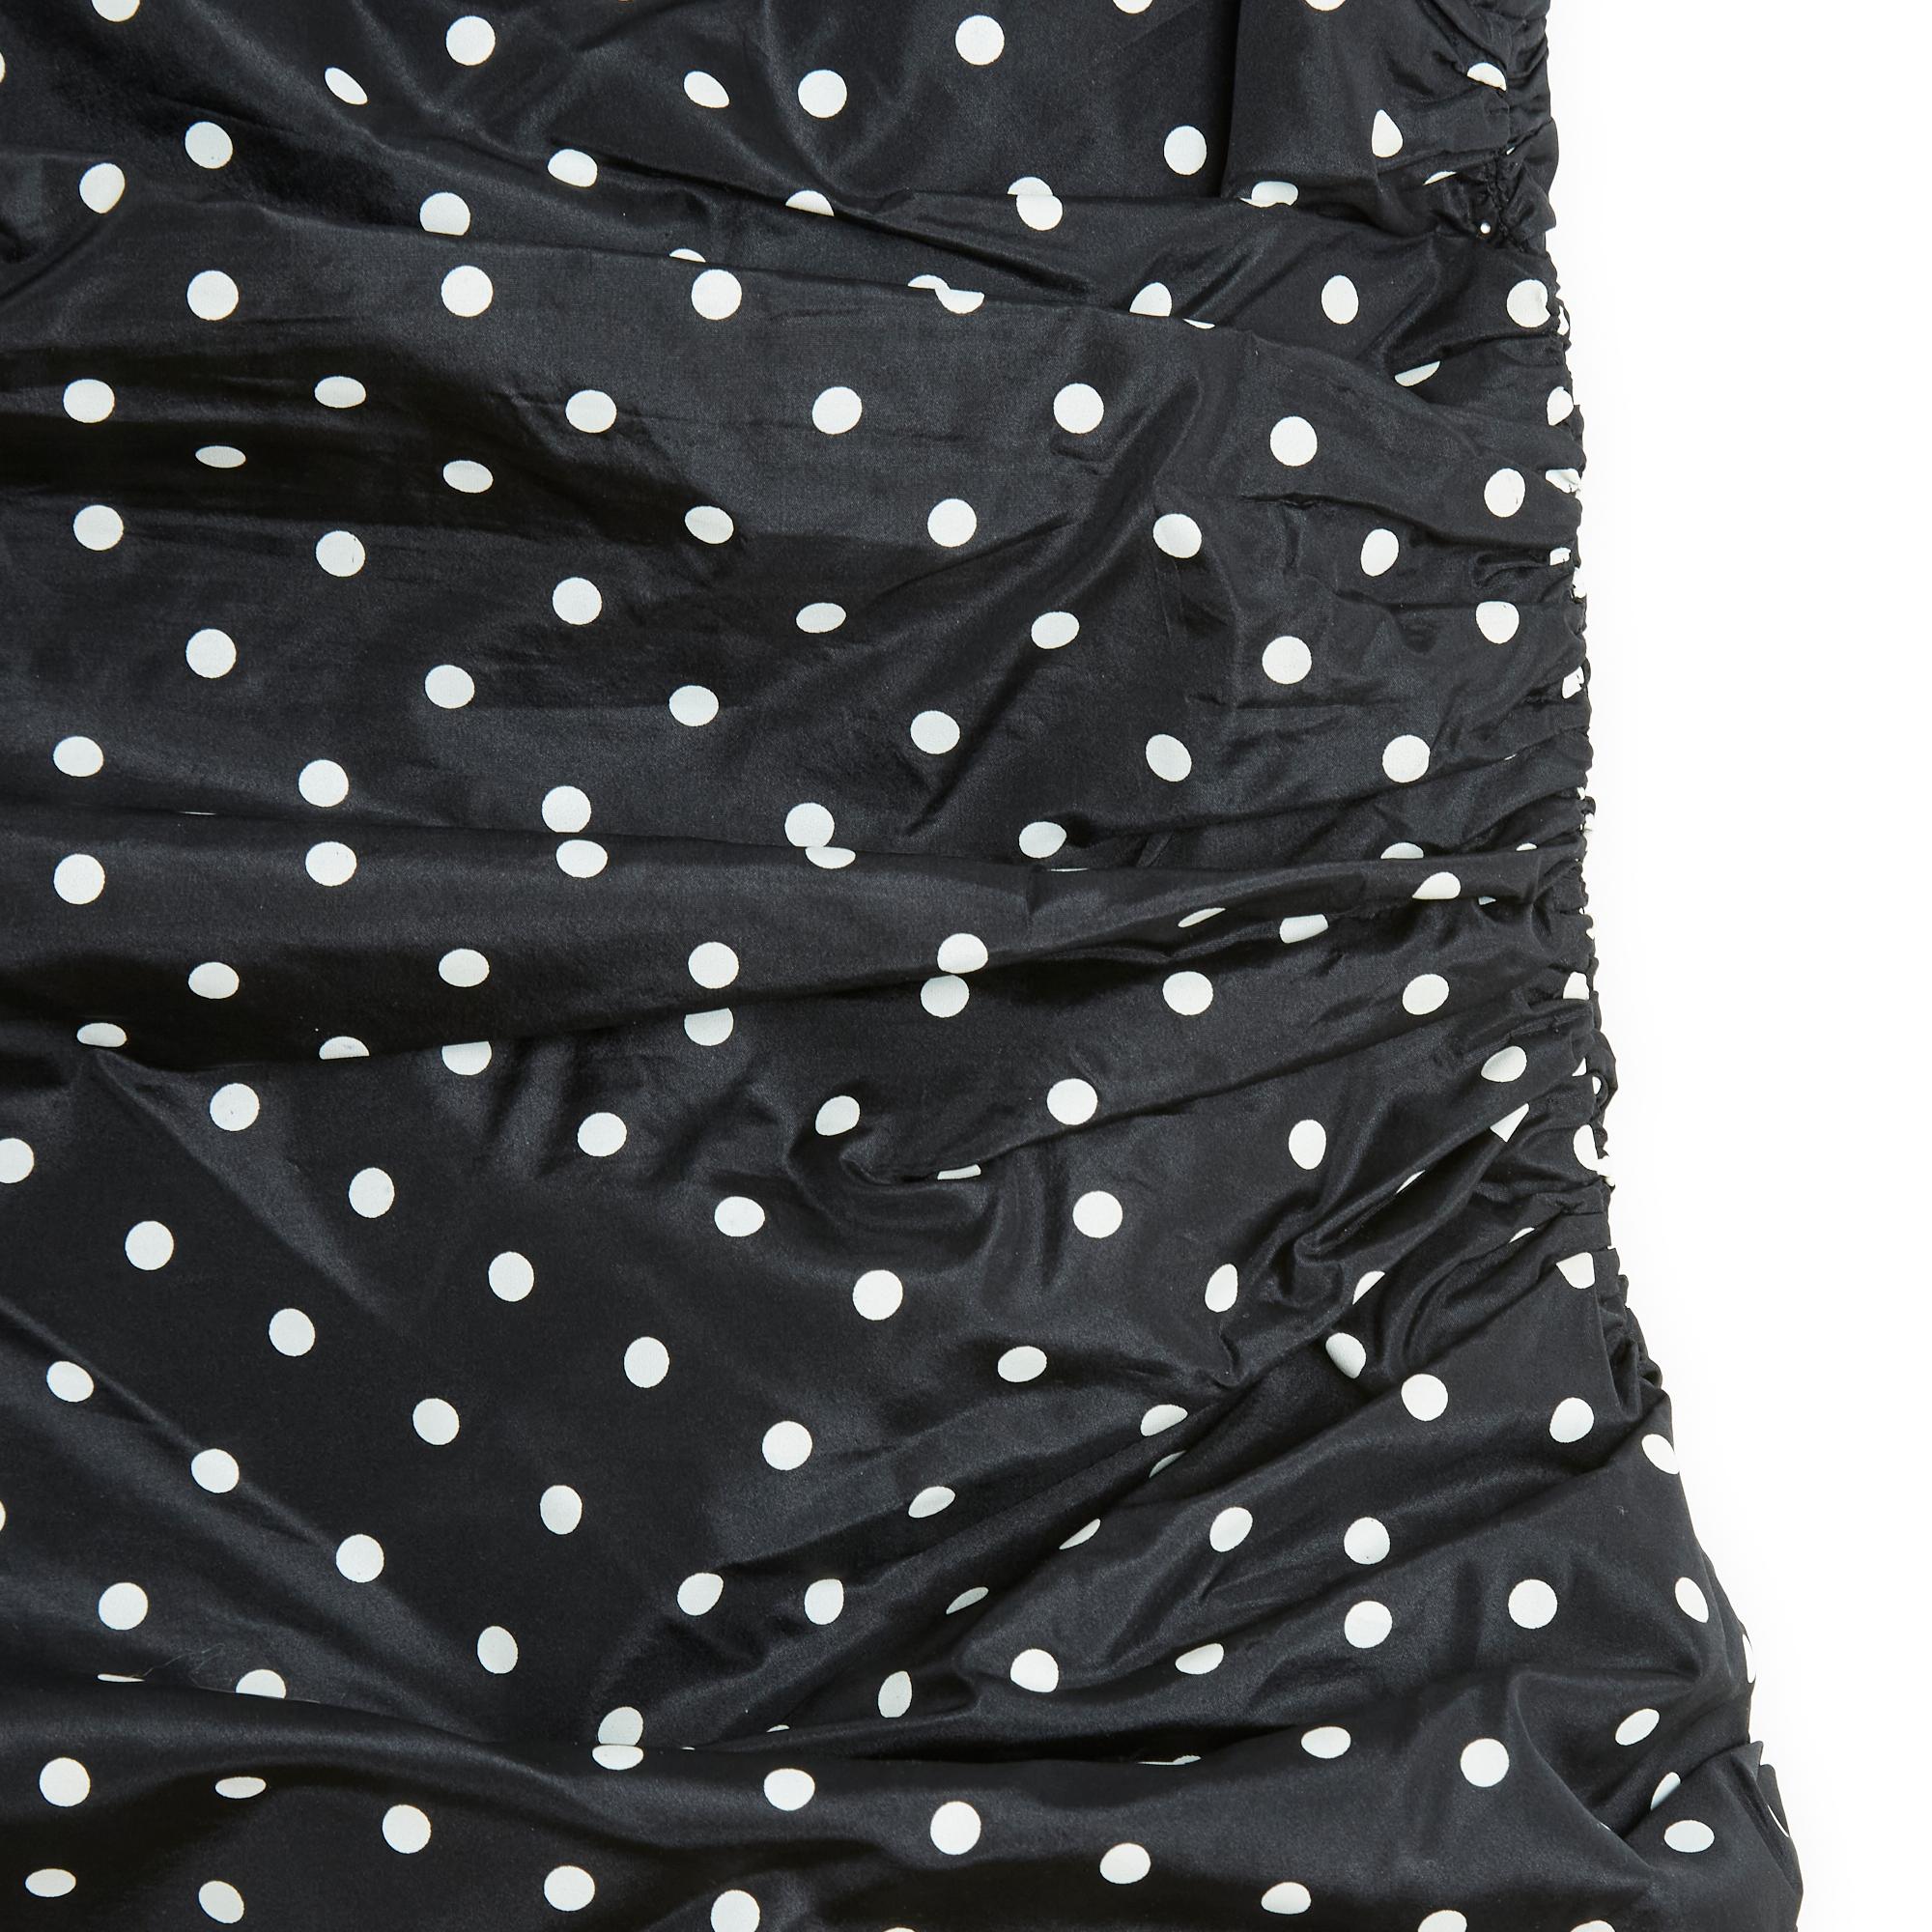 Pierre Balmain Haute Couture Kleid SS2000 Kollektion von Gilles Dufour aus schwarzem Seidenorganza mit weißen Tupfen, Rundhalsausschnitt, ärmellos, leicht asymmetrische Schultern, drapierte Taille (mit Innengürtel), schwarzes Seidenfutter,